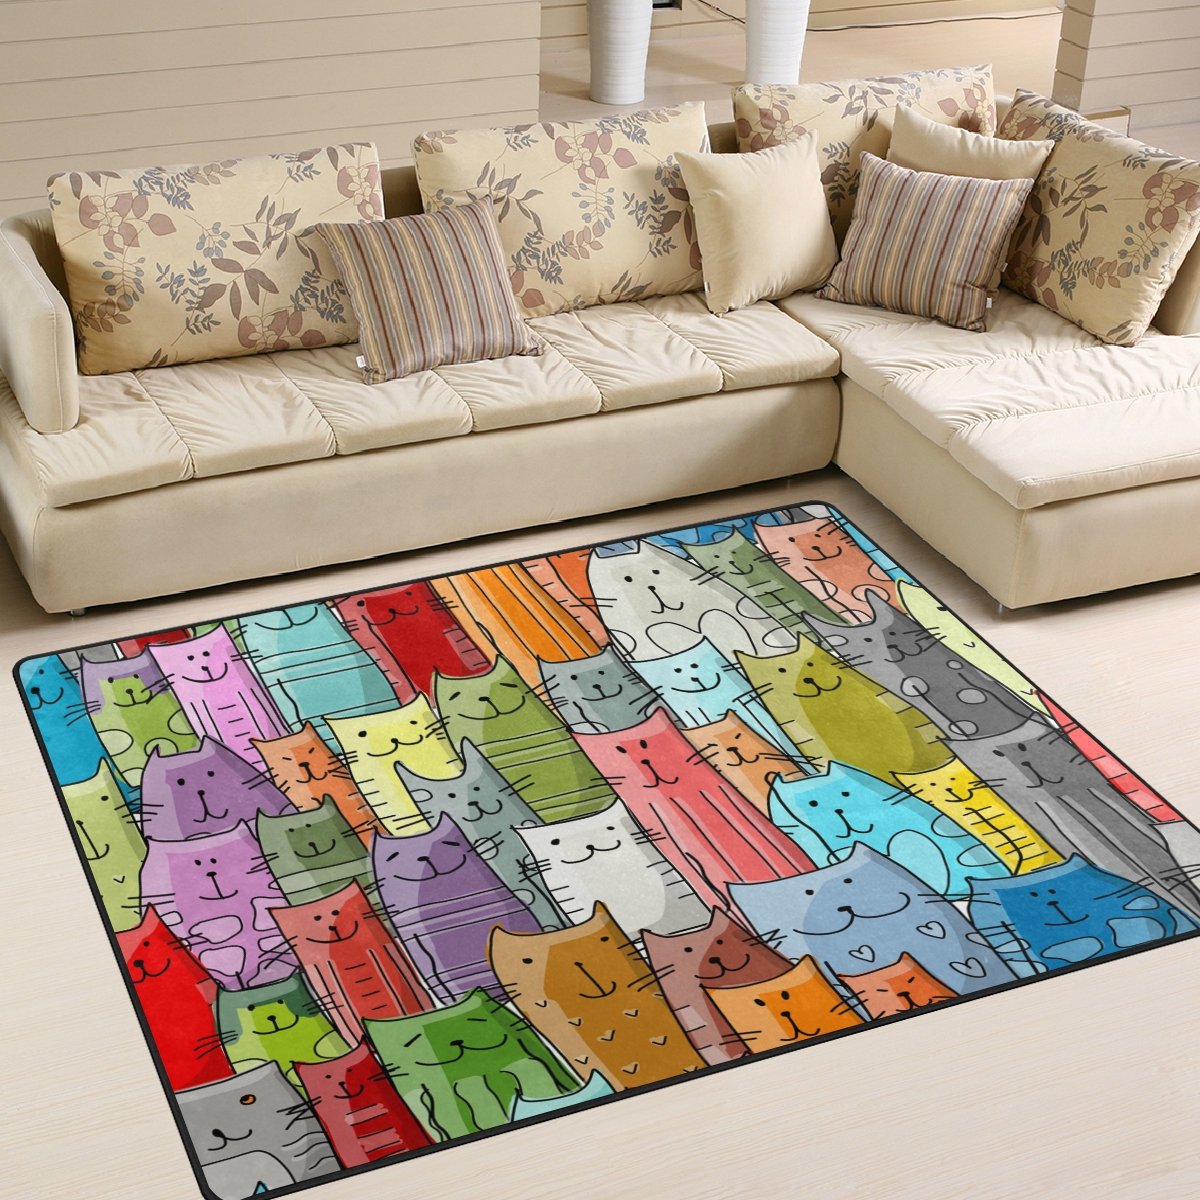 Use7 Farbenfroher Teppich für Wohnzimmer, Schlafzimmer, 160 x 122 cm